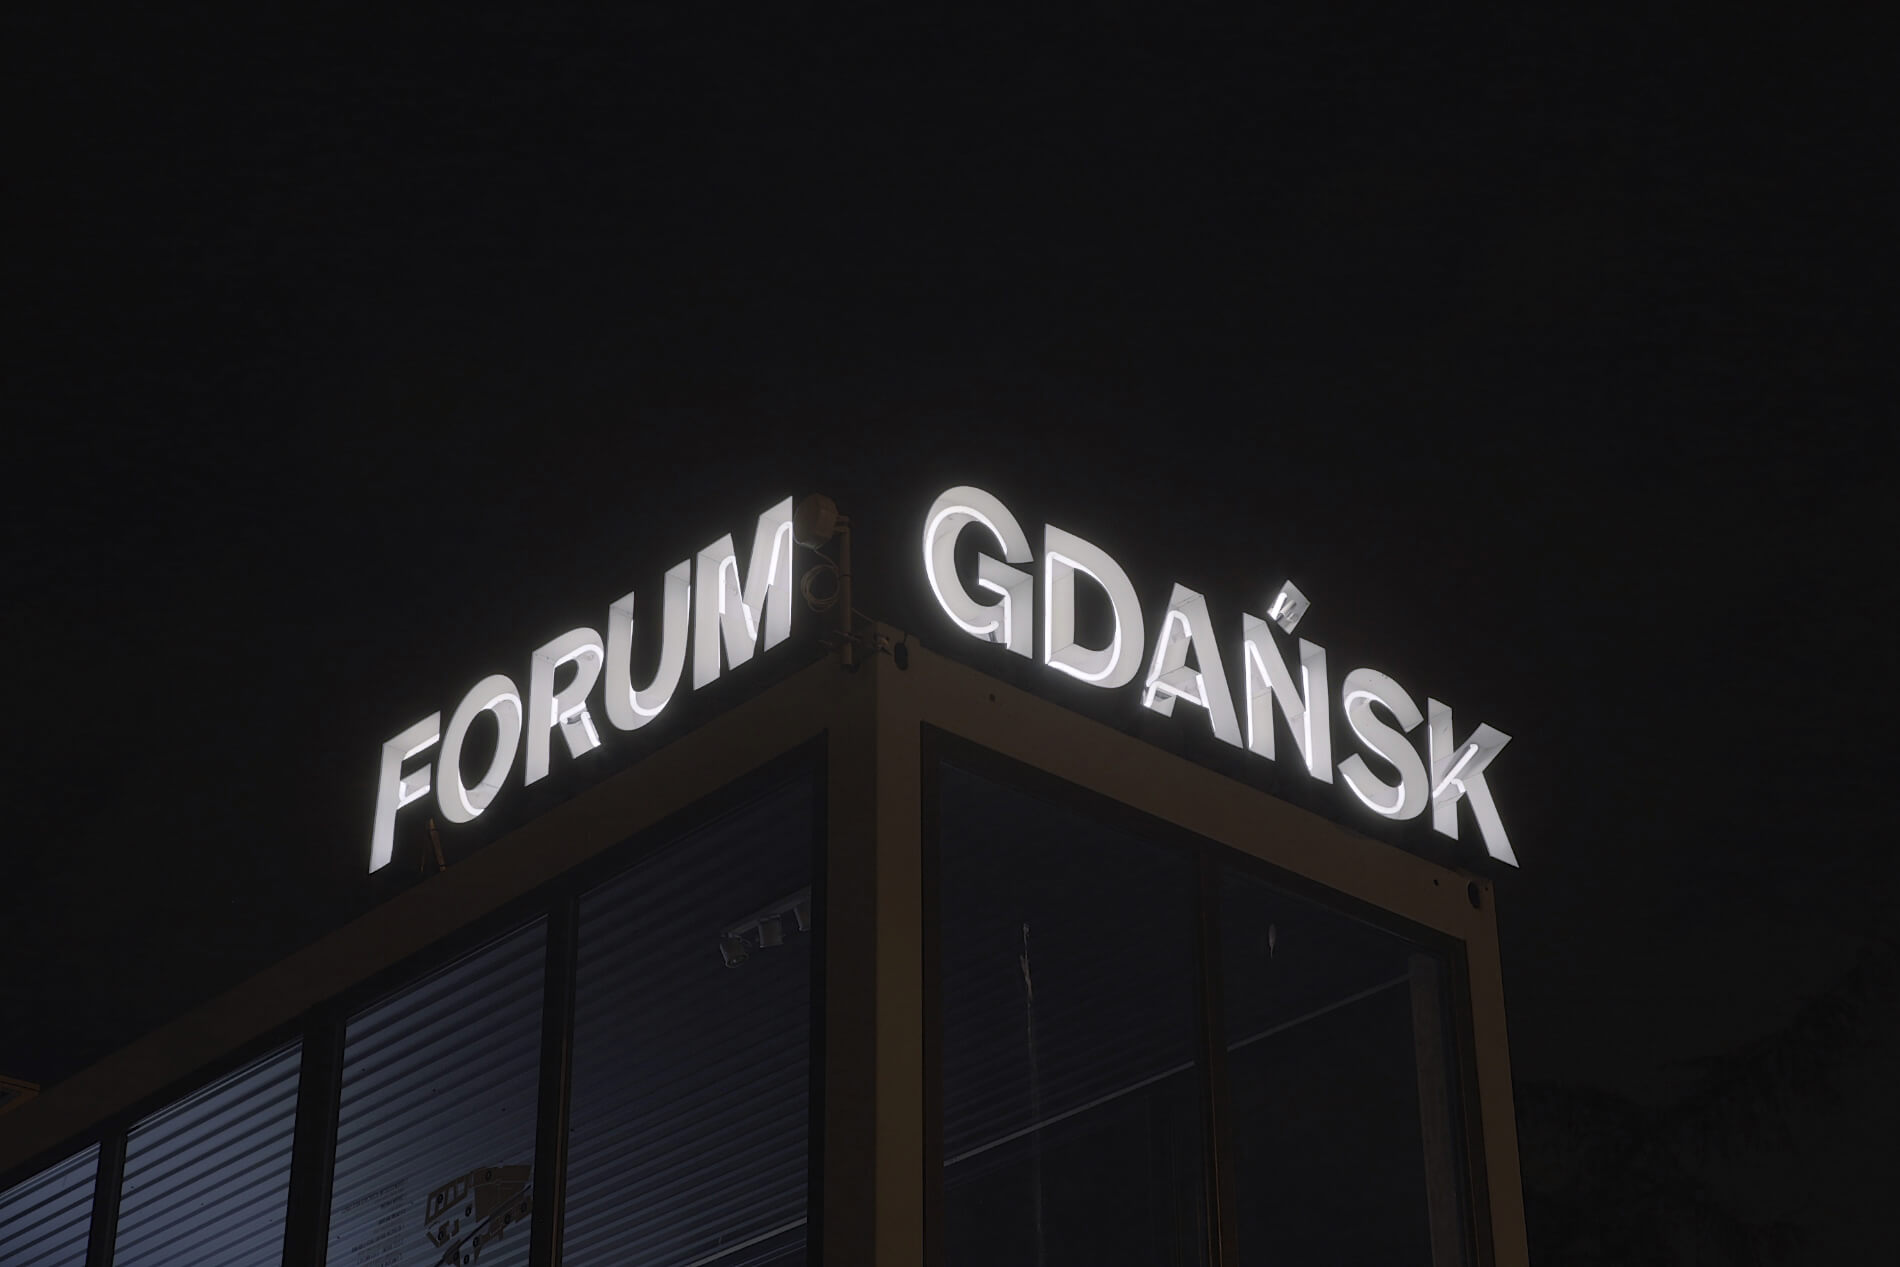 Direction Forum Gdańsk - Danzig Forum - lettres lumineuses avec une enseigne au néon, montées sur un cadre, placées sur le toit du bâtiment